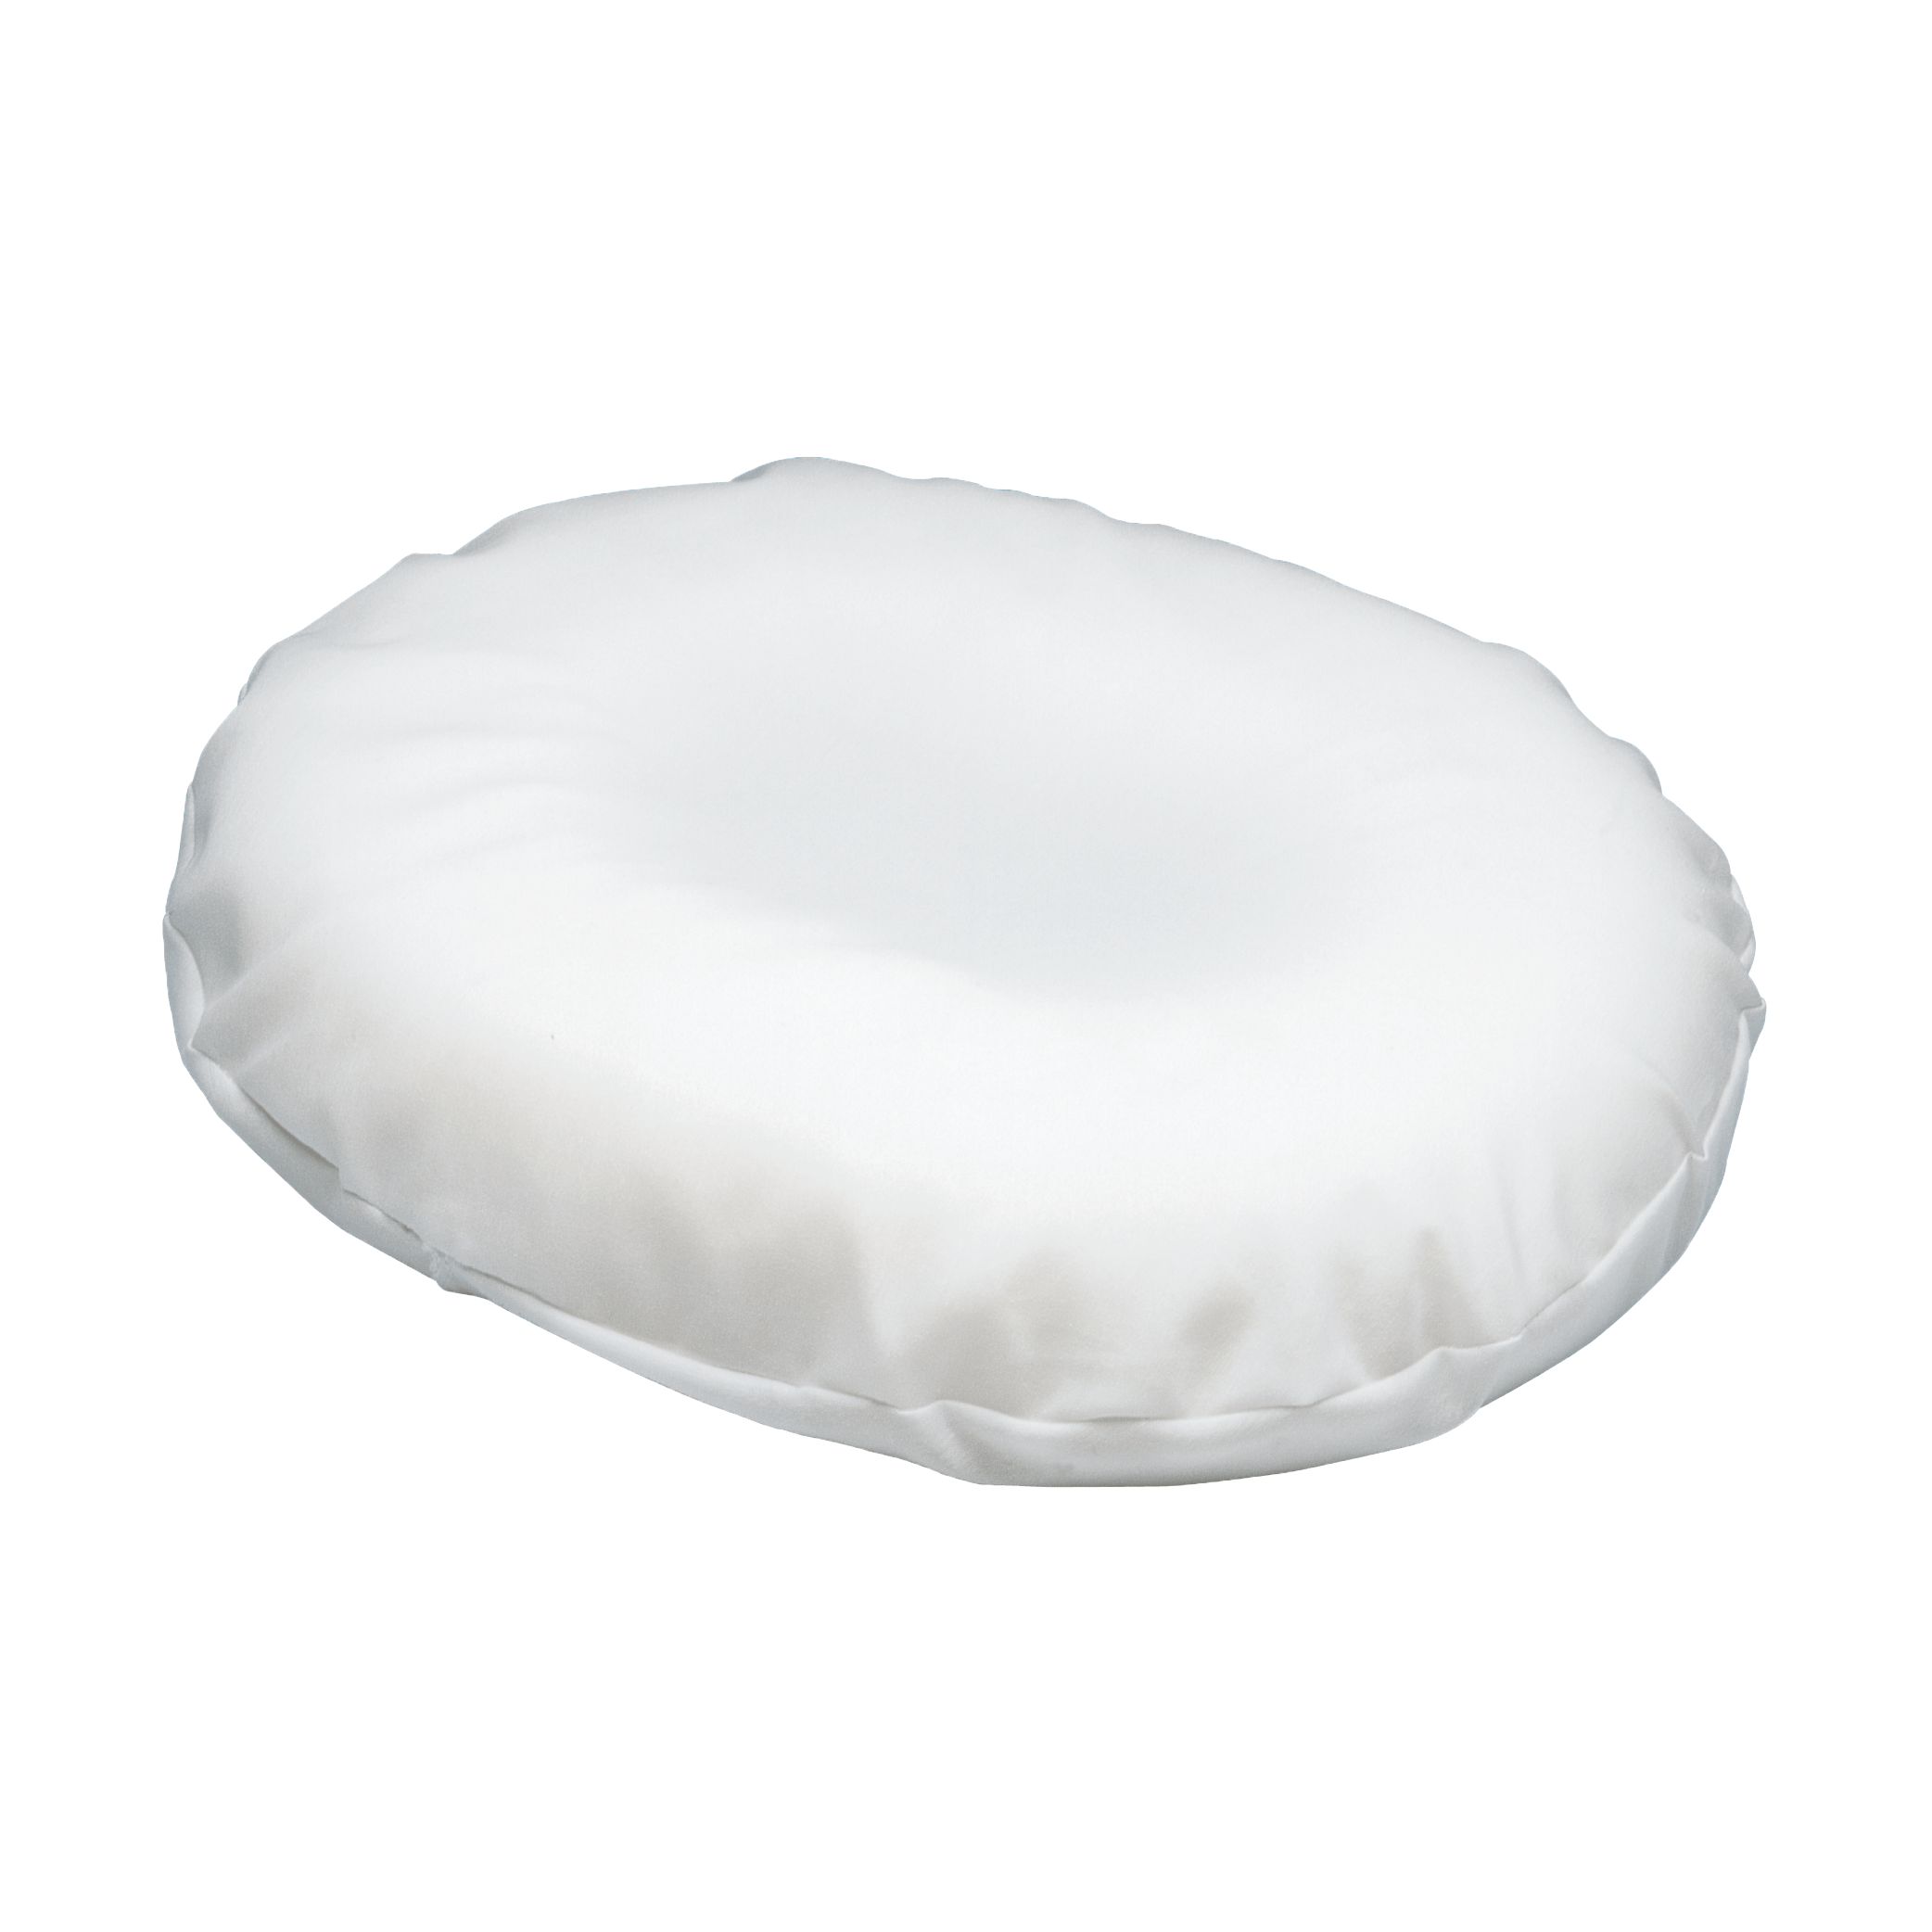 https://carex.com/cdn/shop/products/carexshop-pillow-carex-foam-invalid-cushion-28917486977129.png?v=1679940547